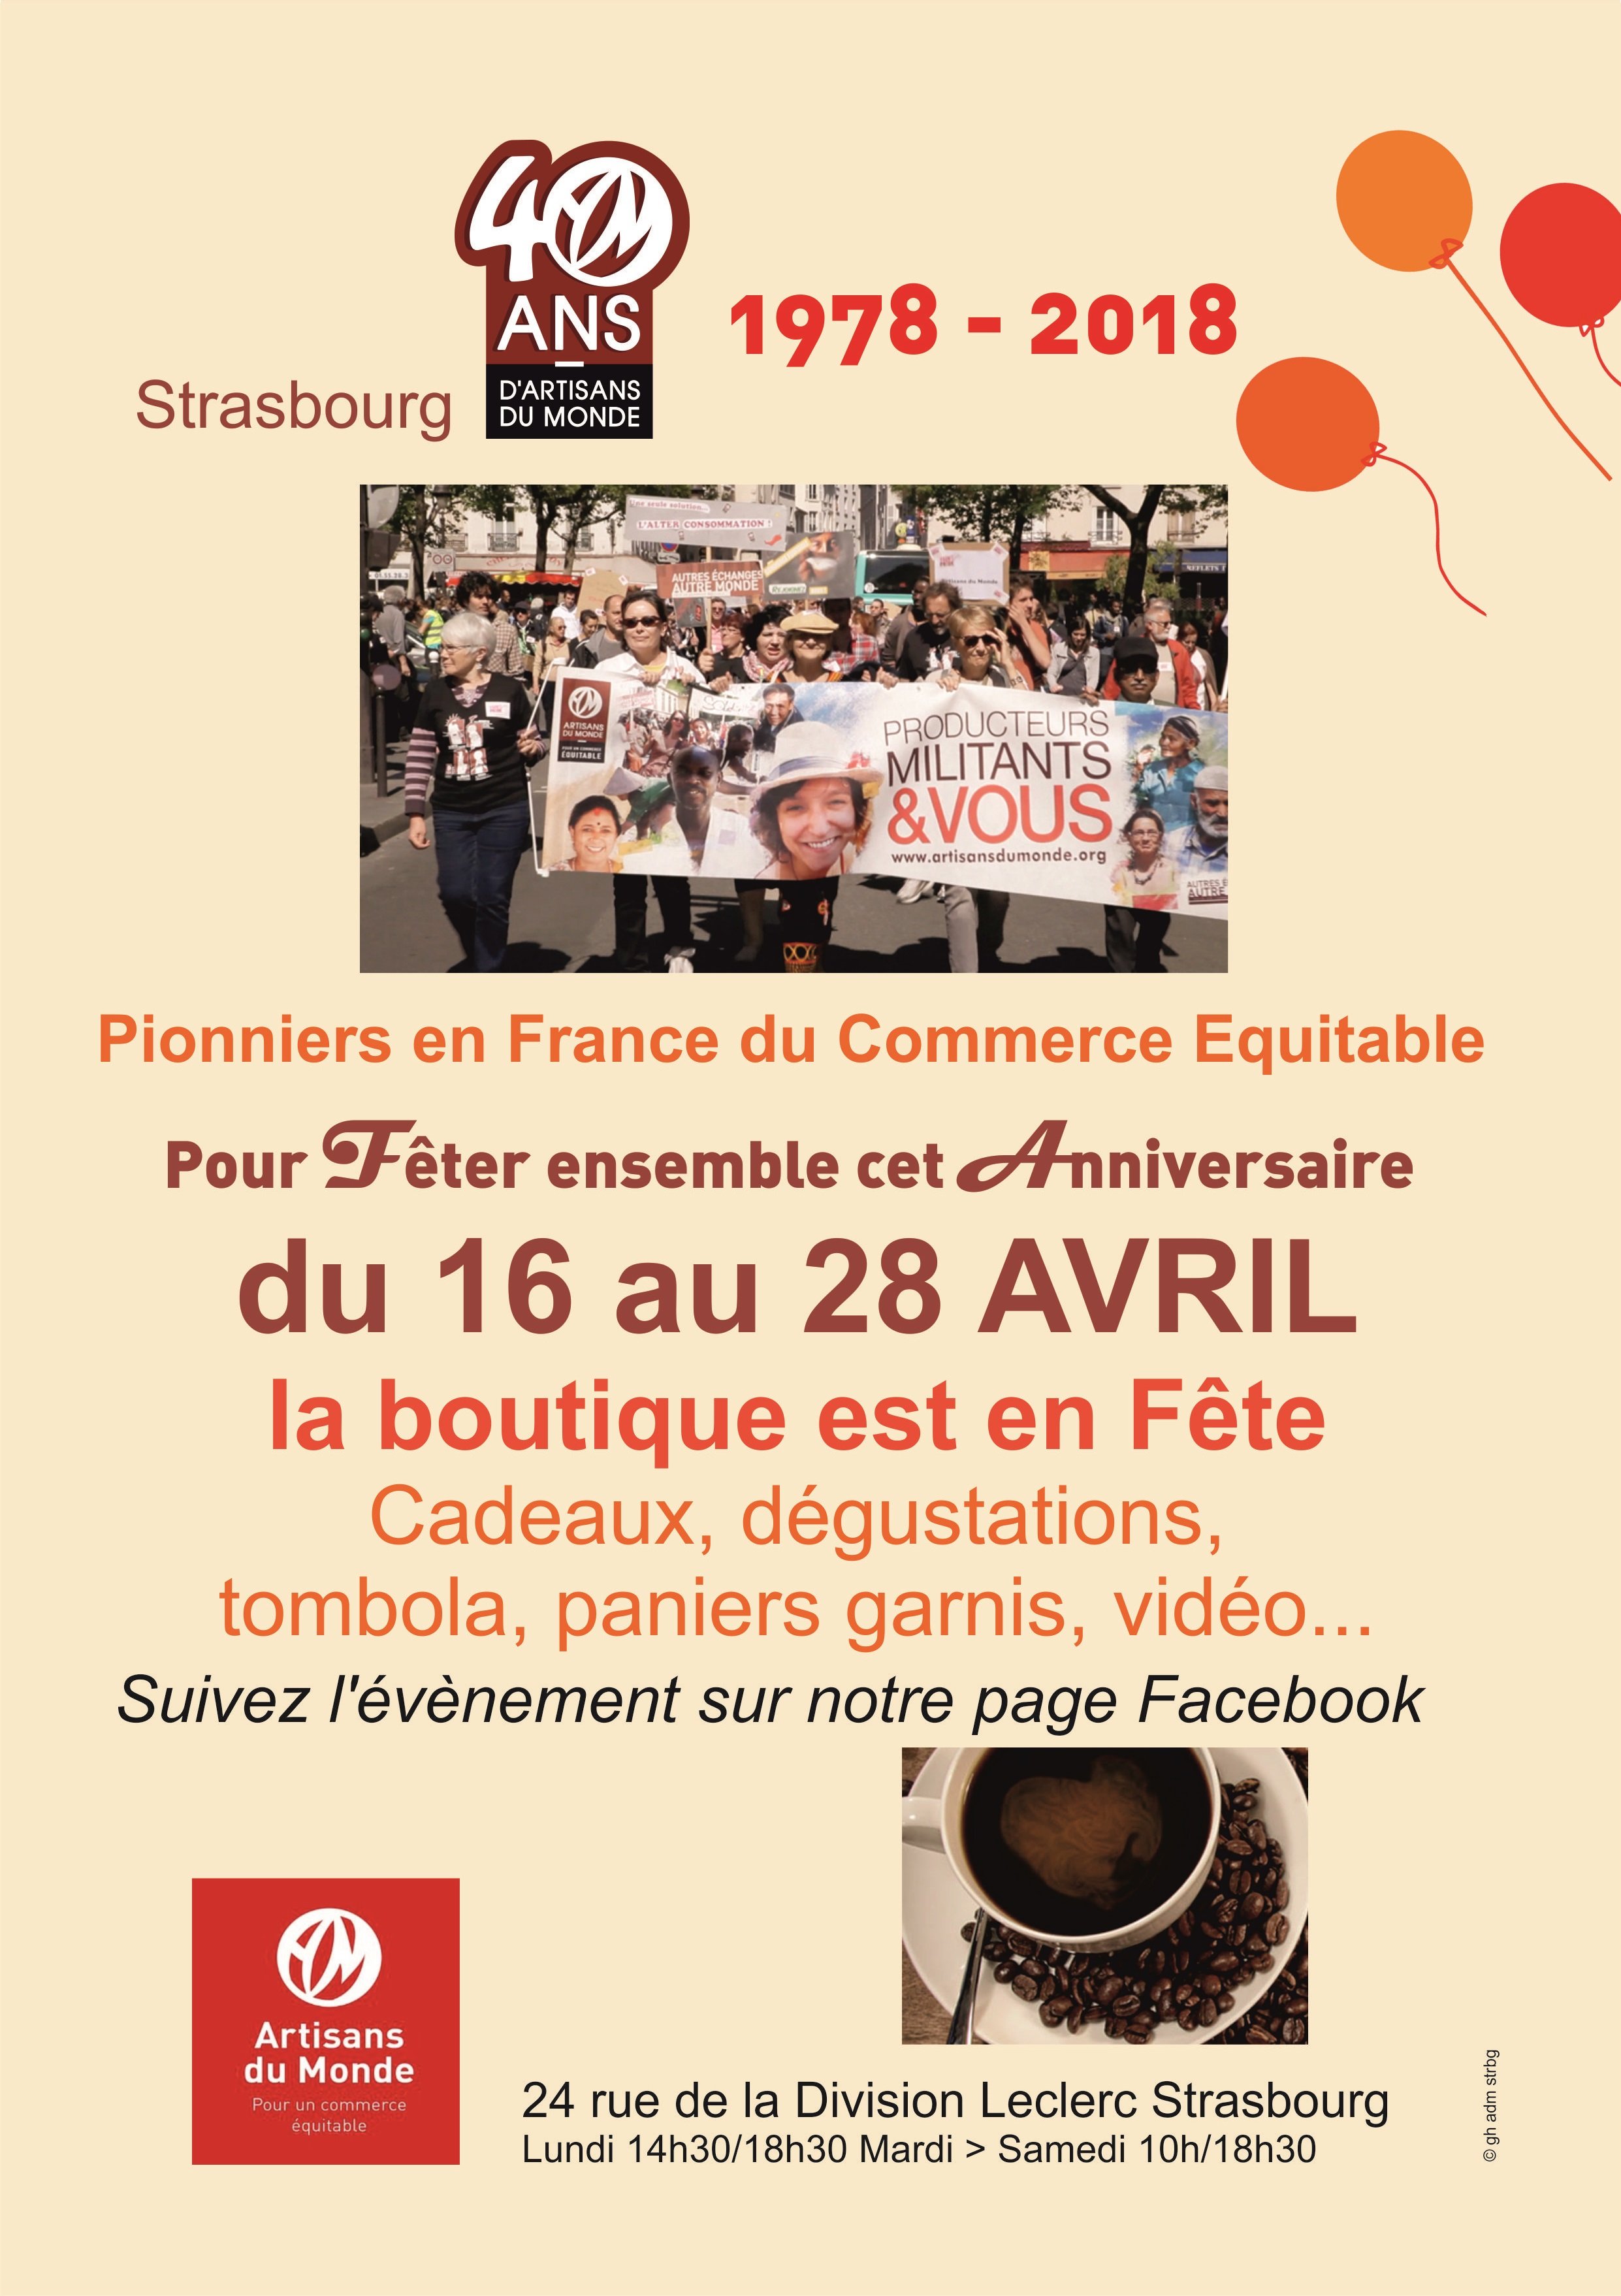 Artisans du Monde Strasbourg 40 ans de commerce équitable